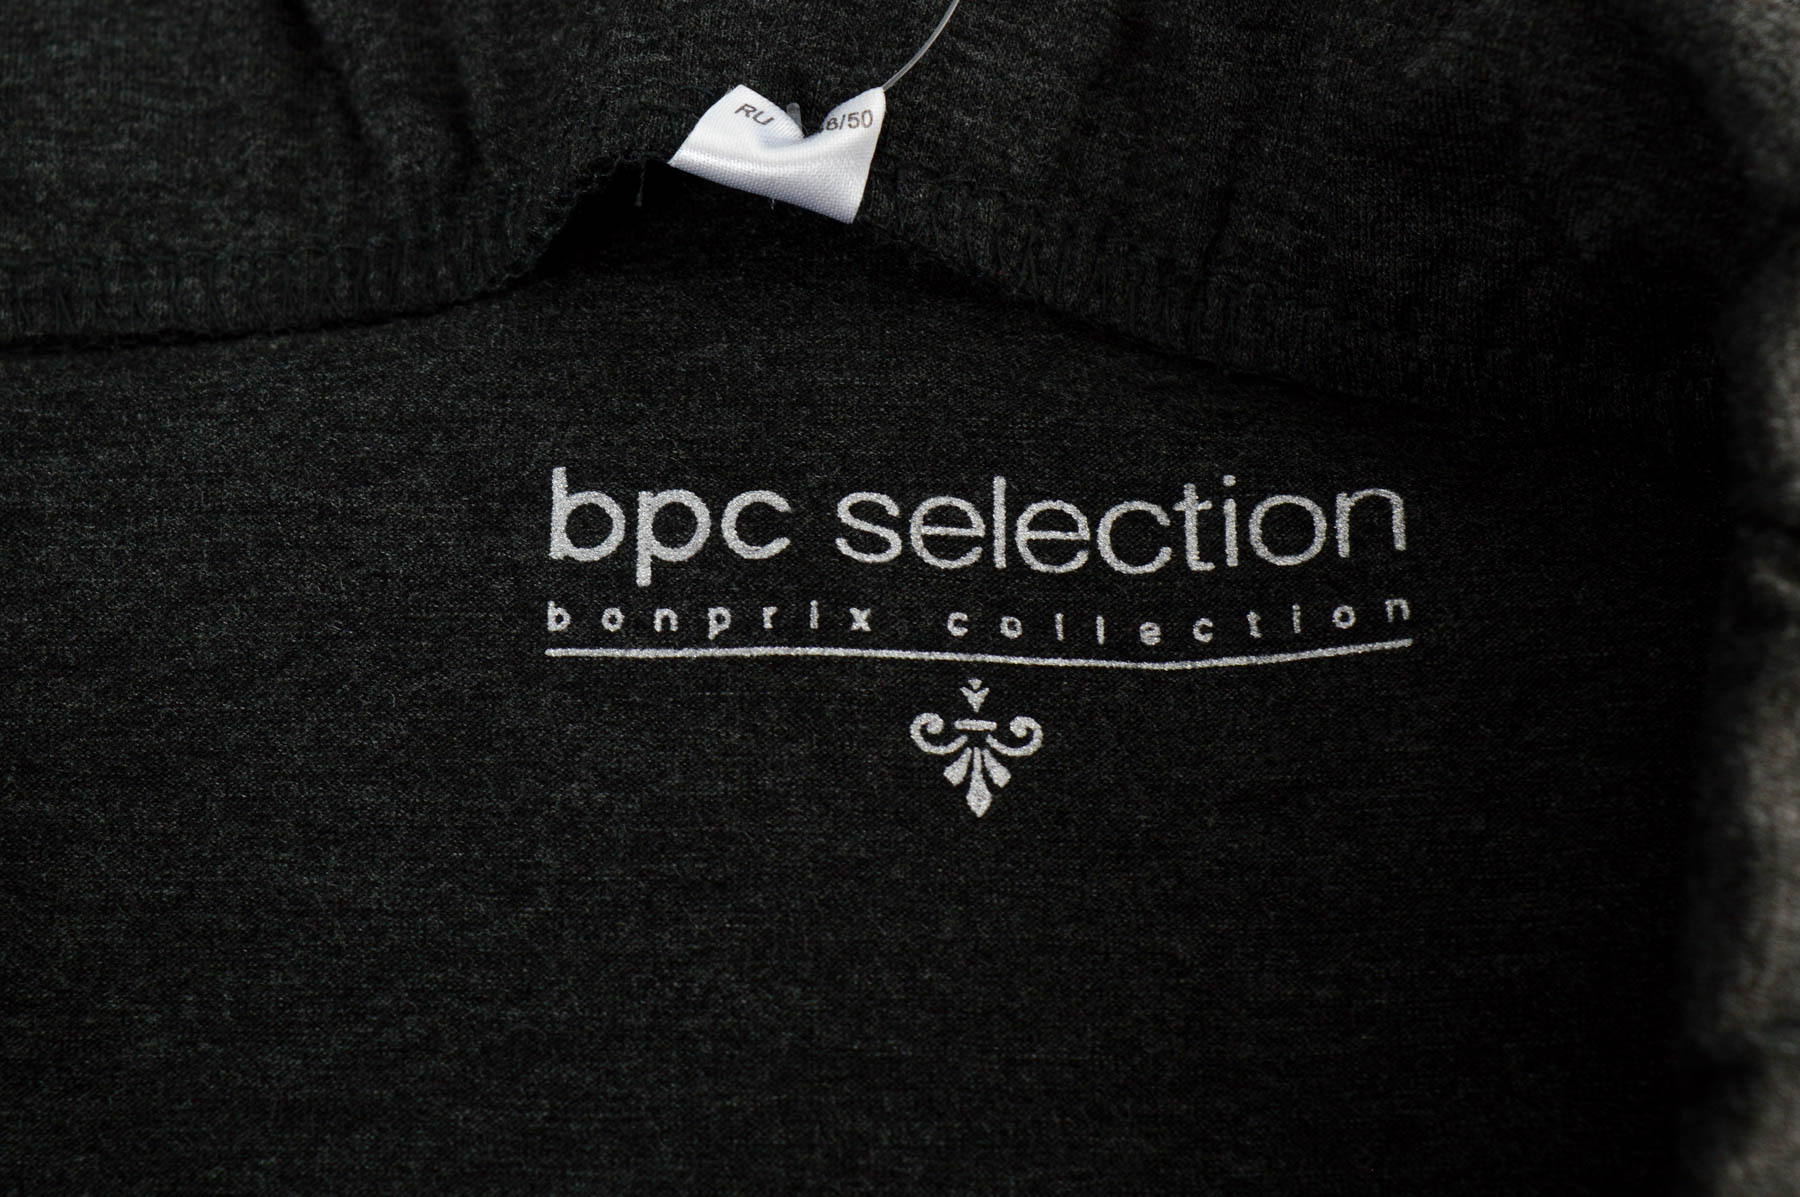 Spódnica - Bpc selection bonprix collection - 2